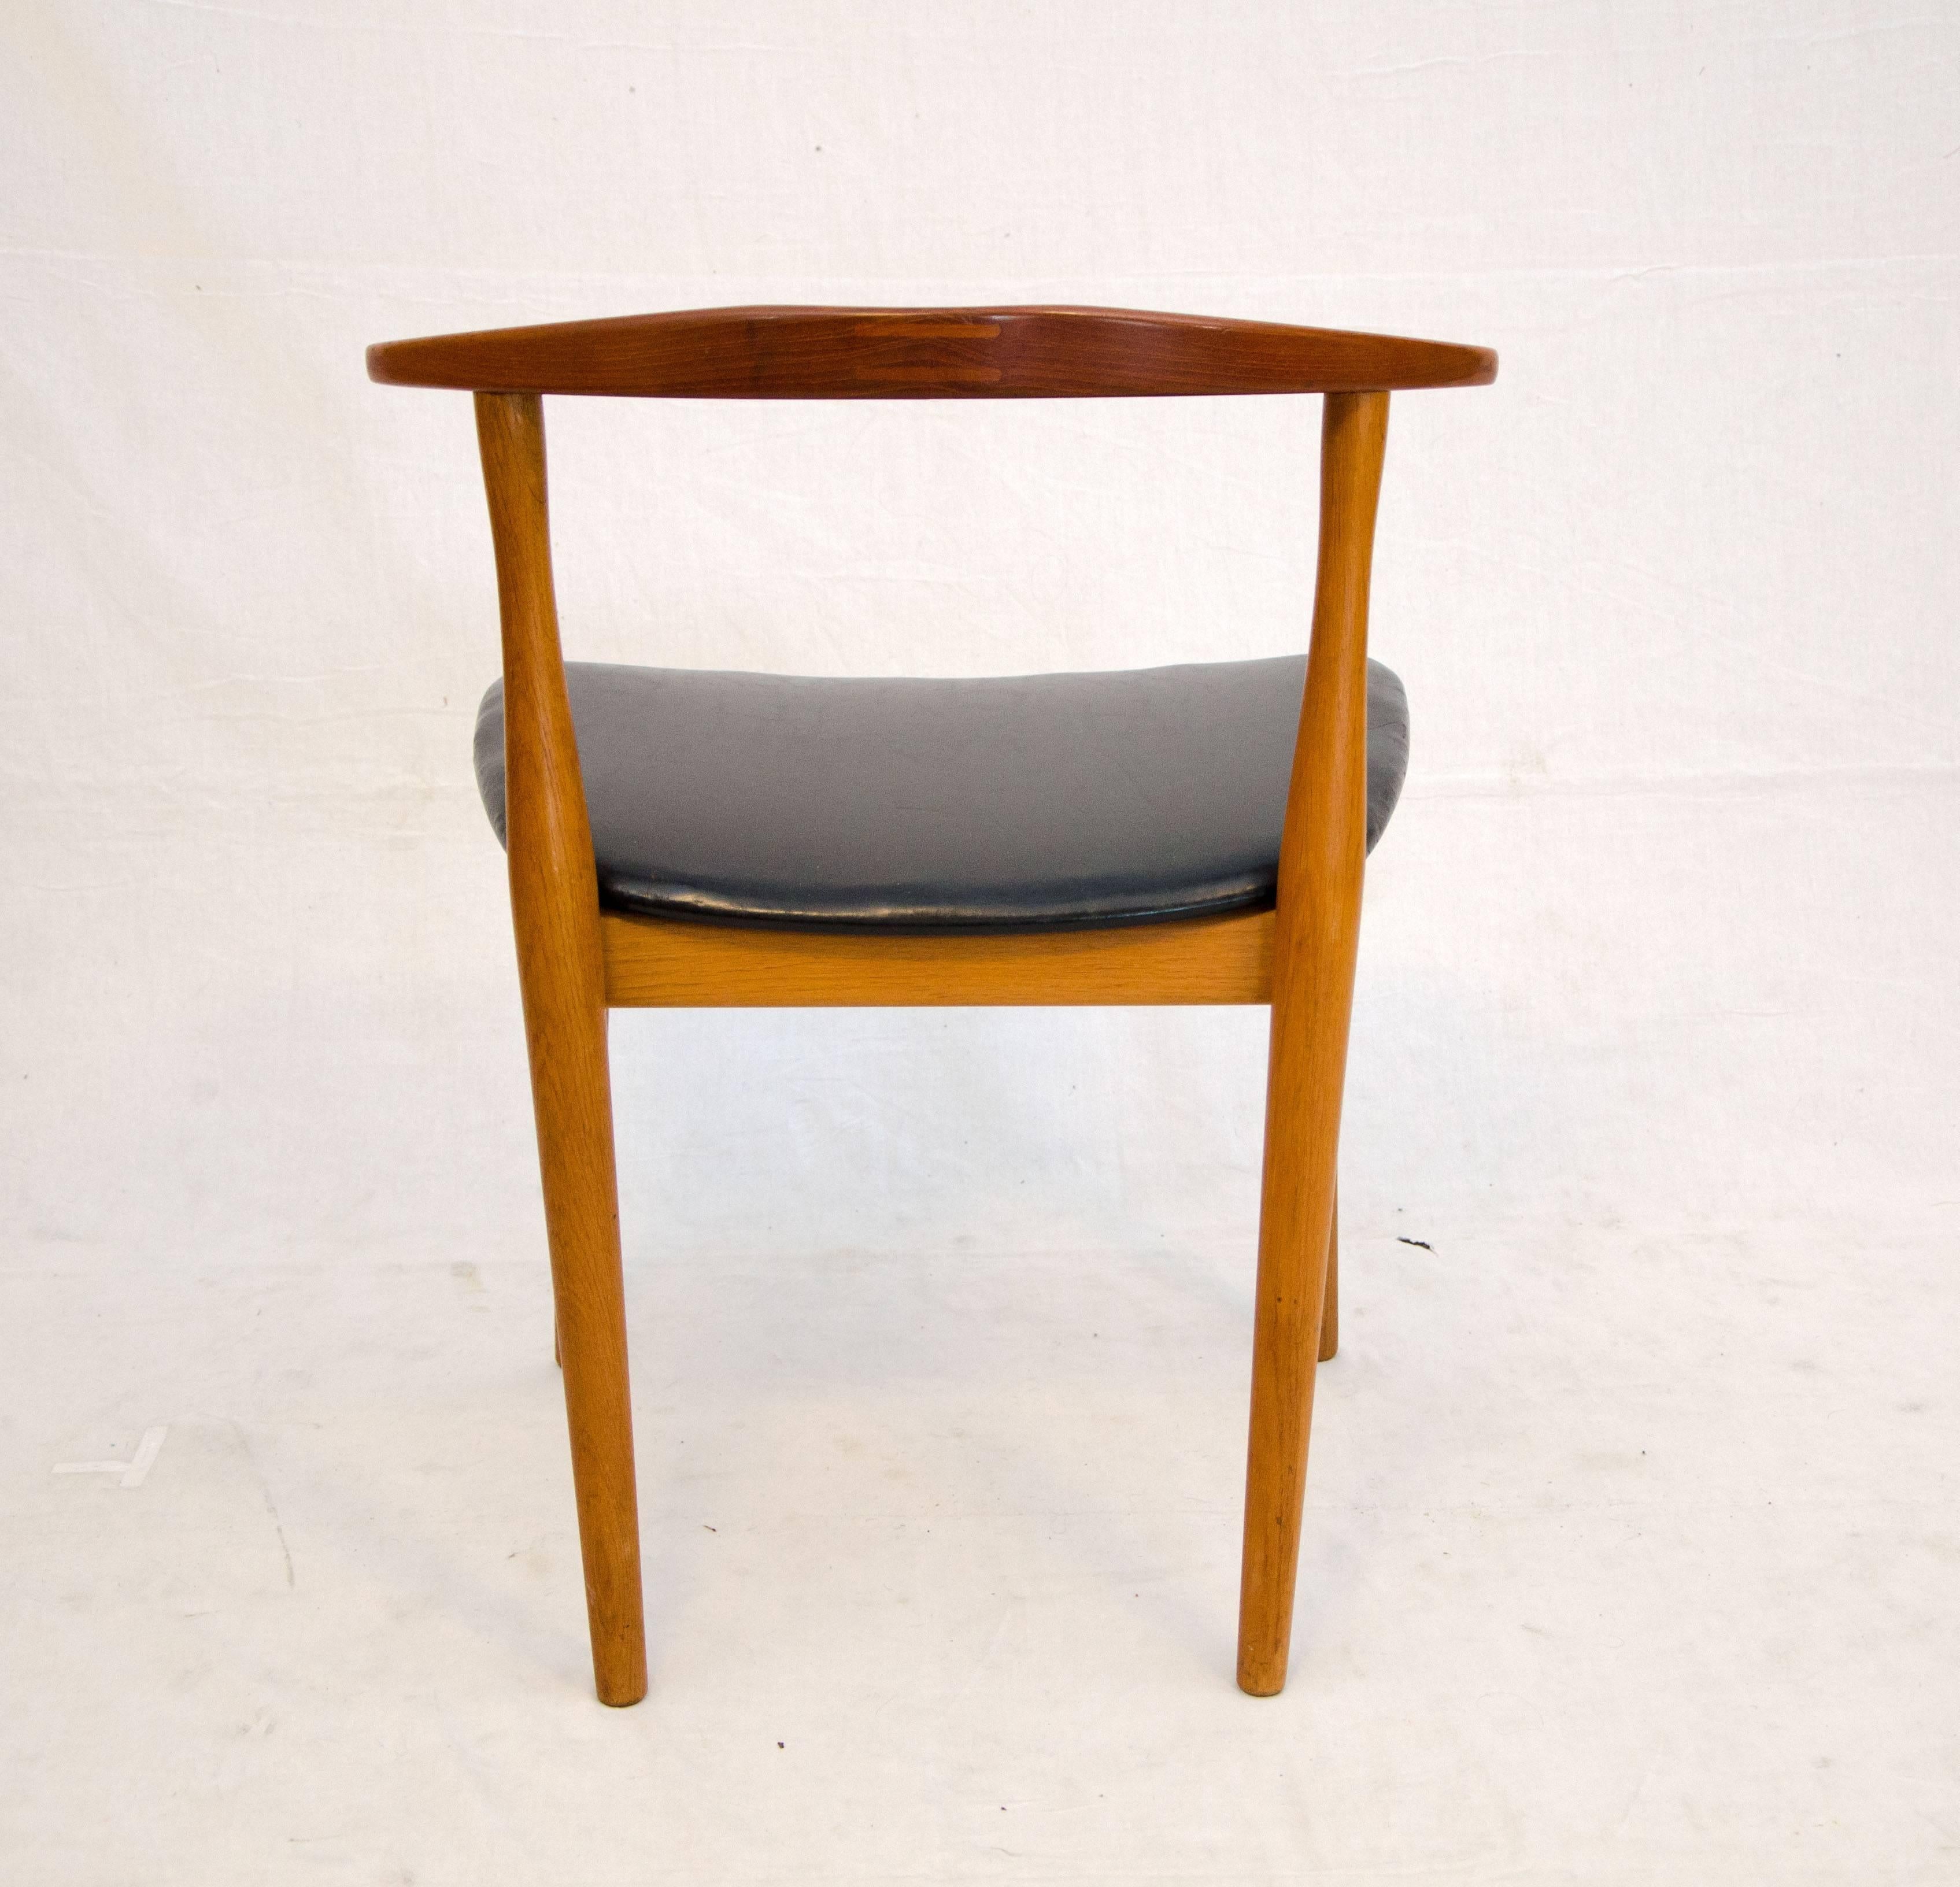 20th Century Danish Teak Desk or Occasional Chair by Architekt Kjærnulf for Bruno Hansen